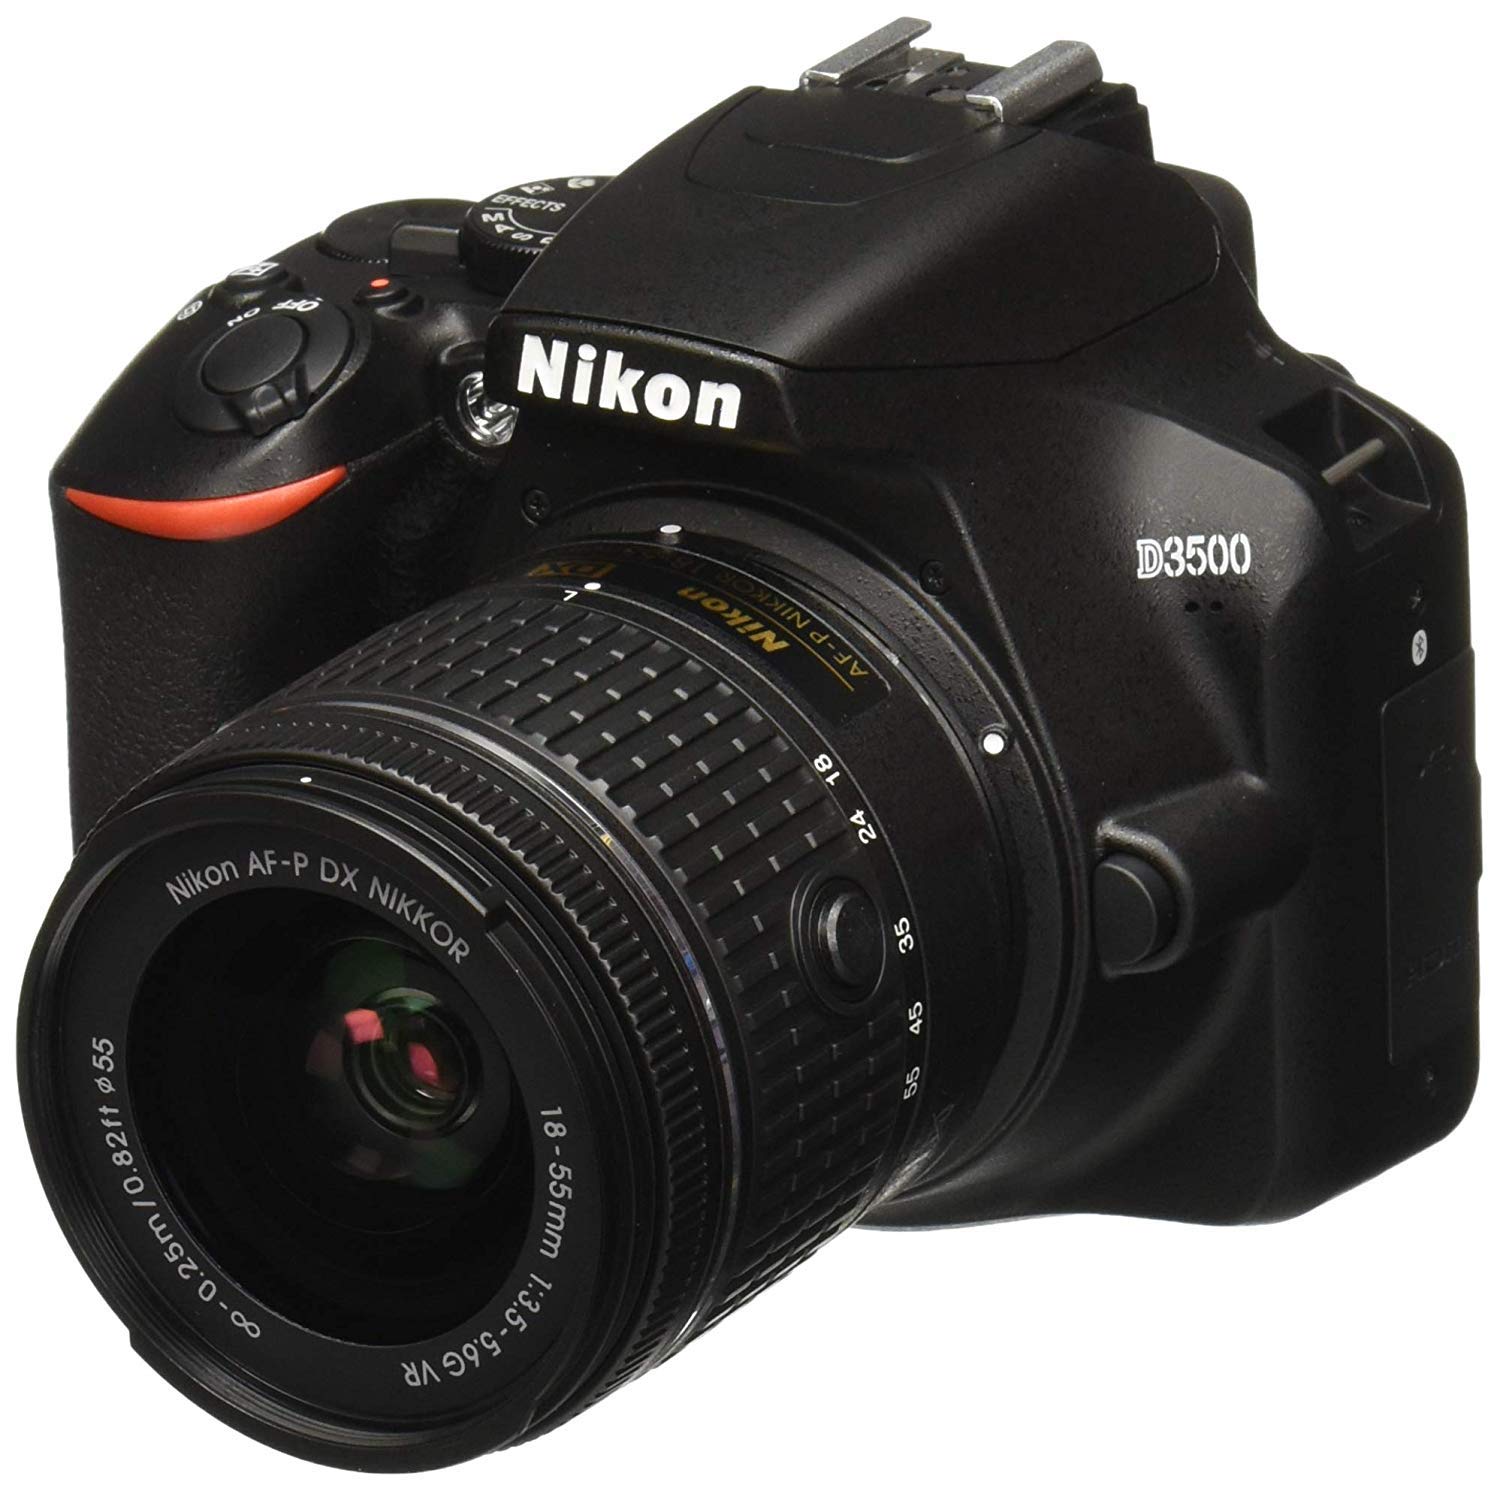 D3500 W/AF-P DX NIKKOR 18-55mm f/3.5-5.6G VR Black - Essential Accessories Bundle